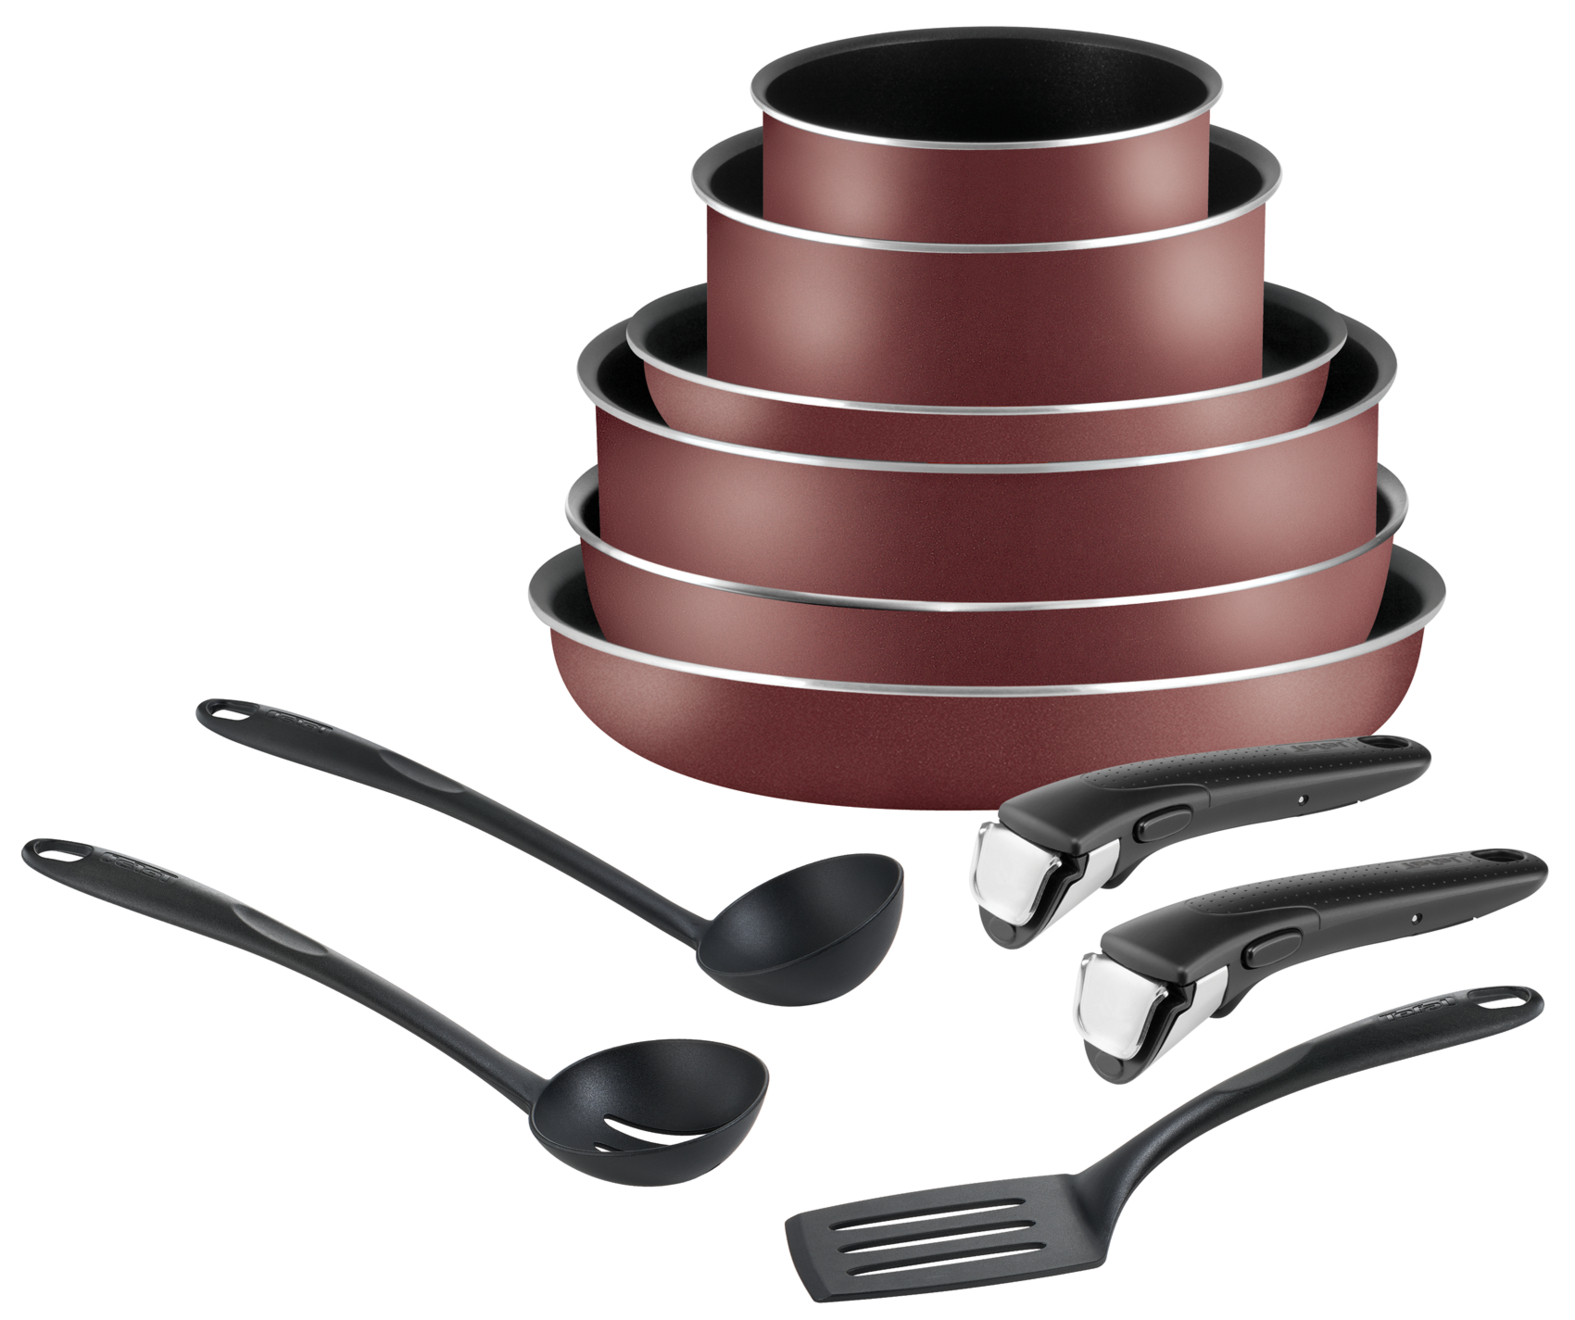 Набор посуды Ingenio Red 11 предметов 04186850 набор инструментов maxpiler mxt 46 set 46 предметов 1 4 crv